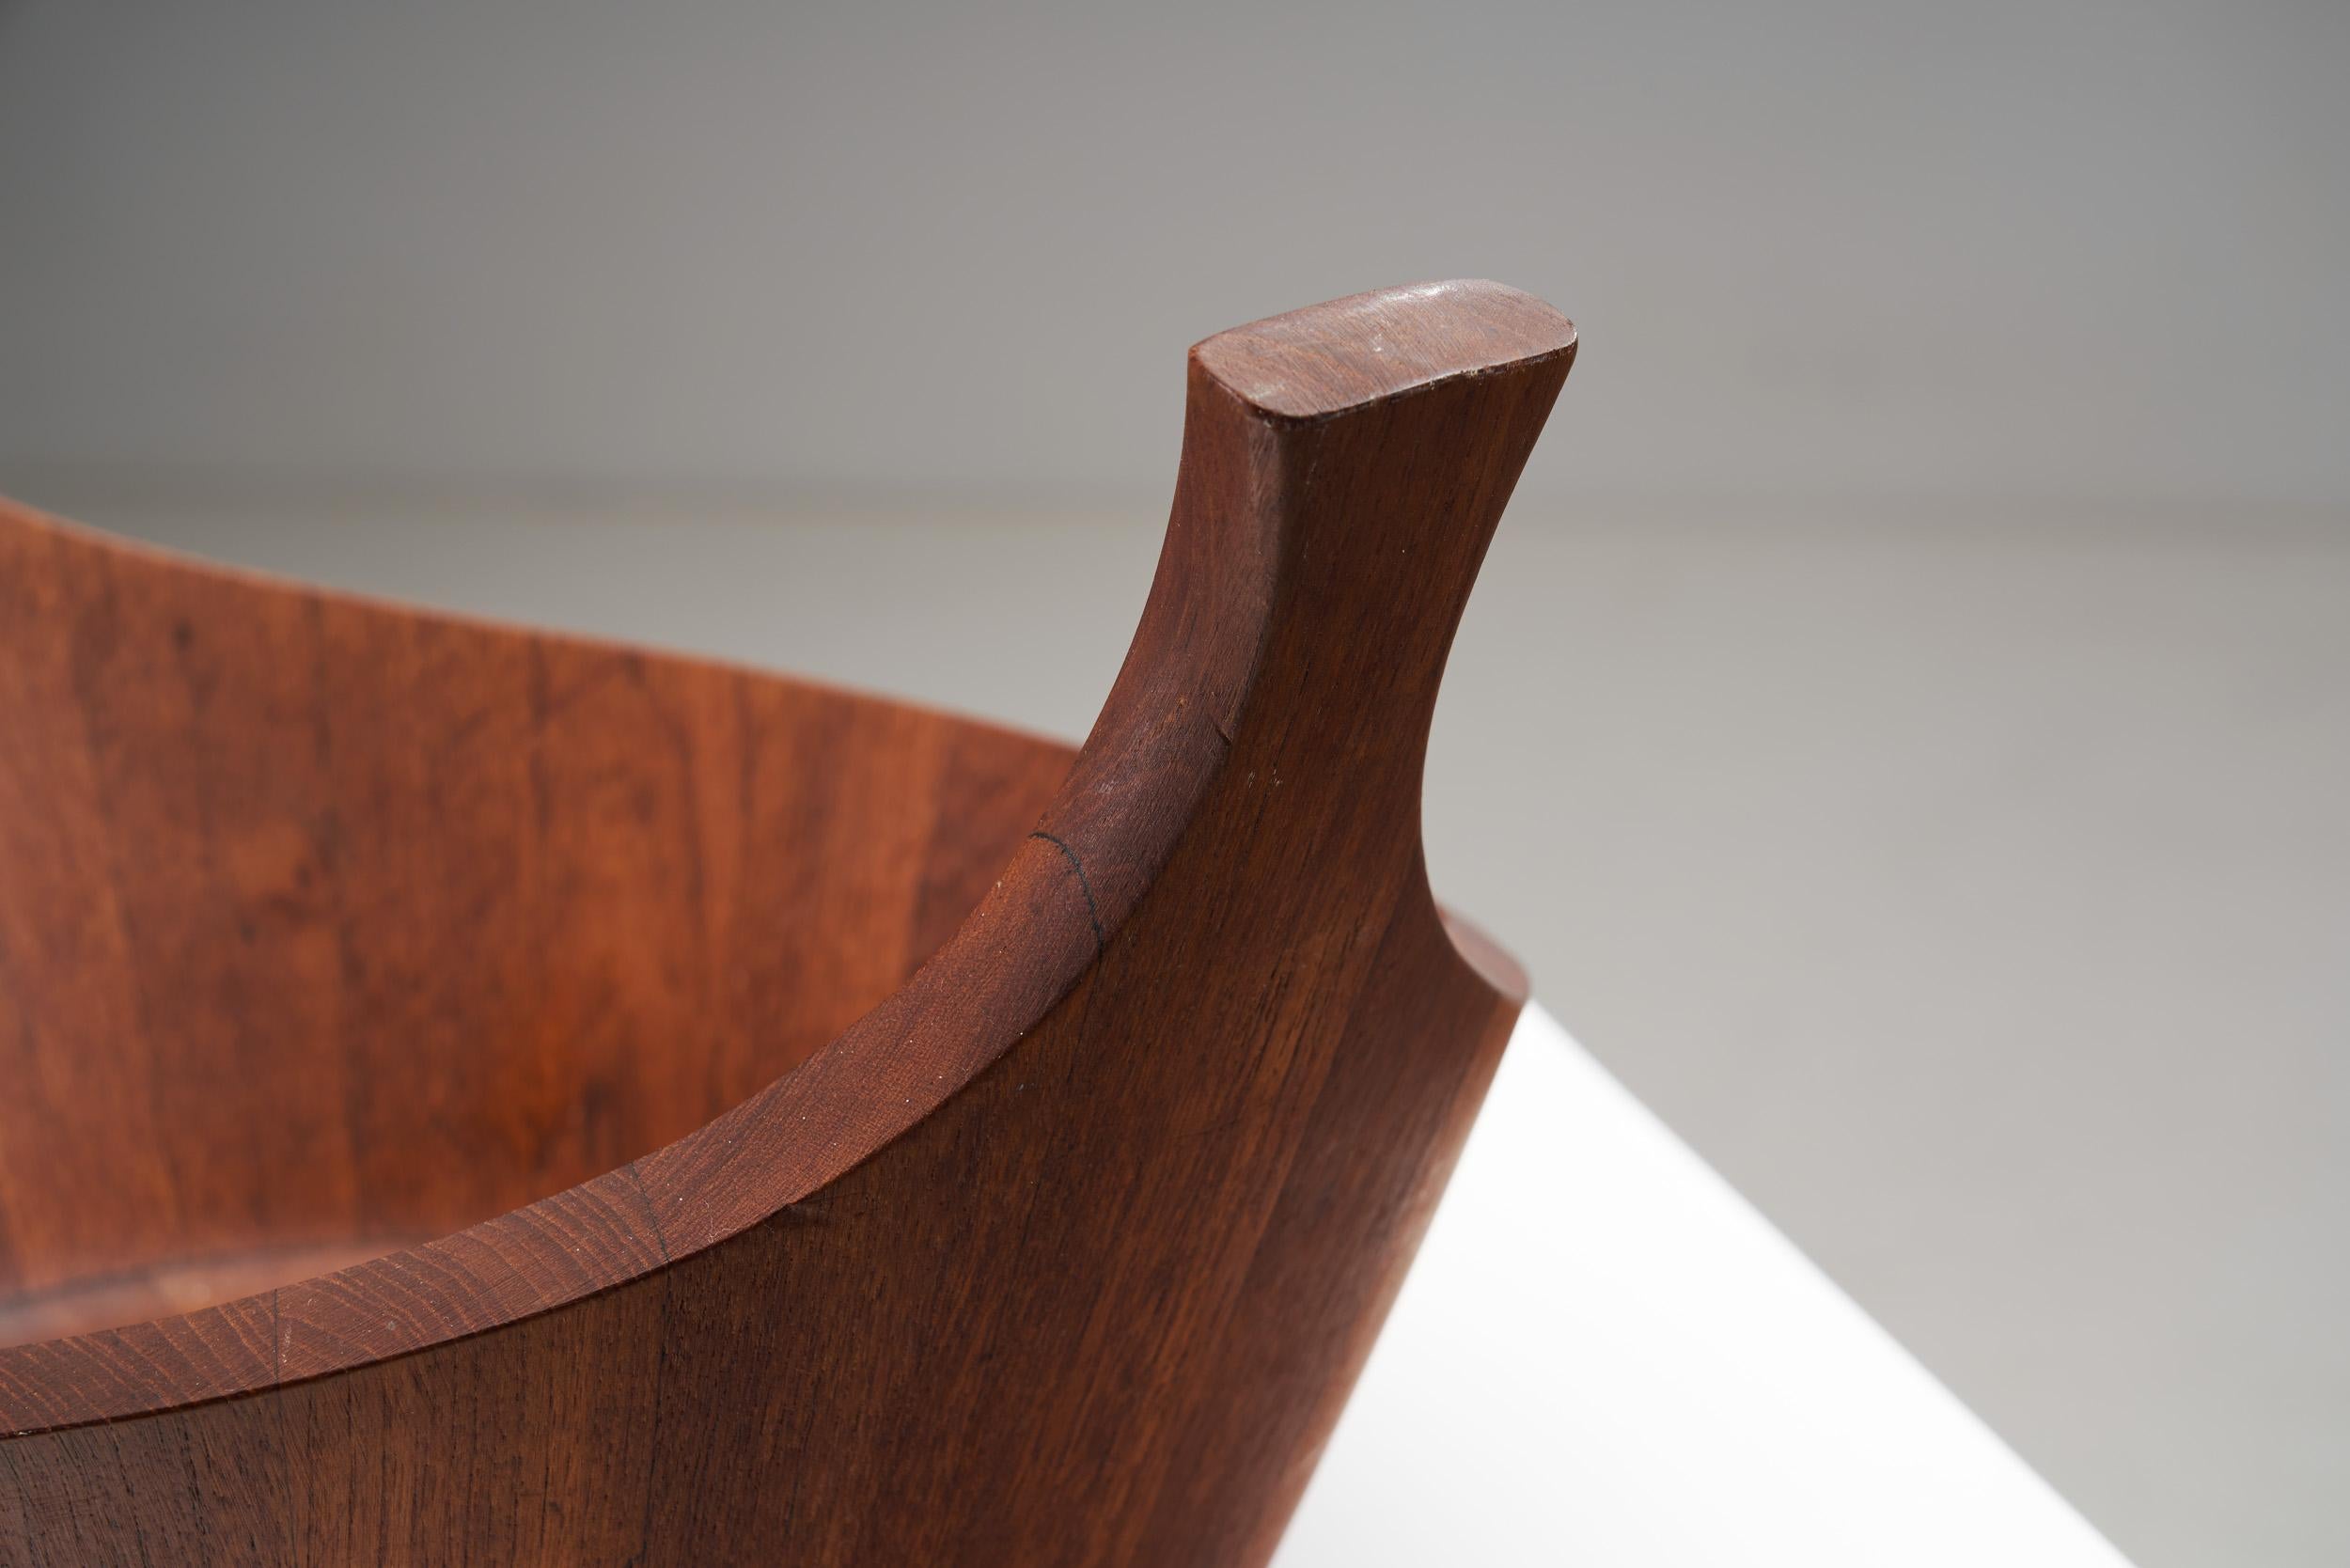 Wood Jens Quistgaard Staved Teak Bowl for Dansk Design, Denmark, 1950s